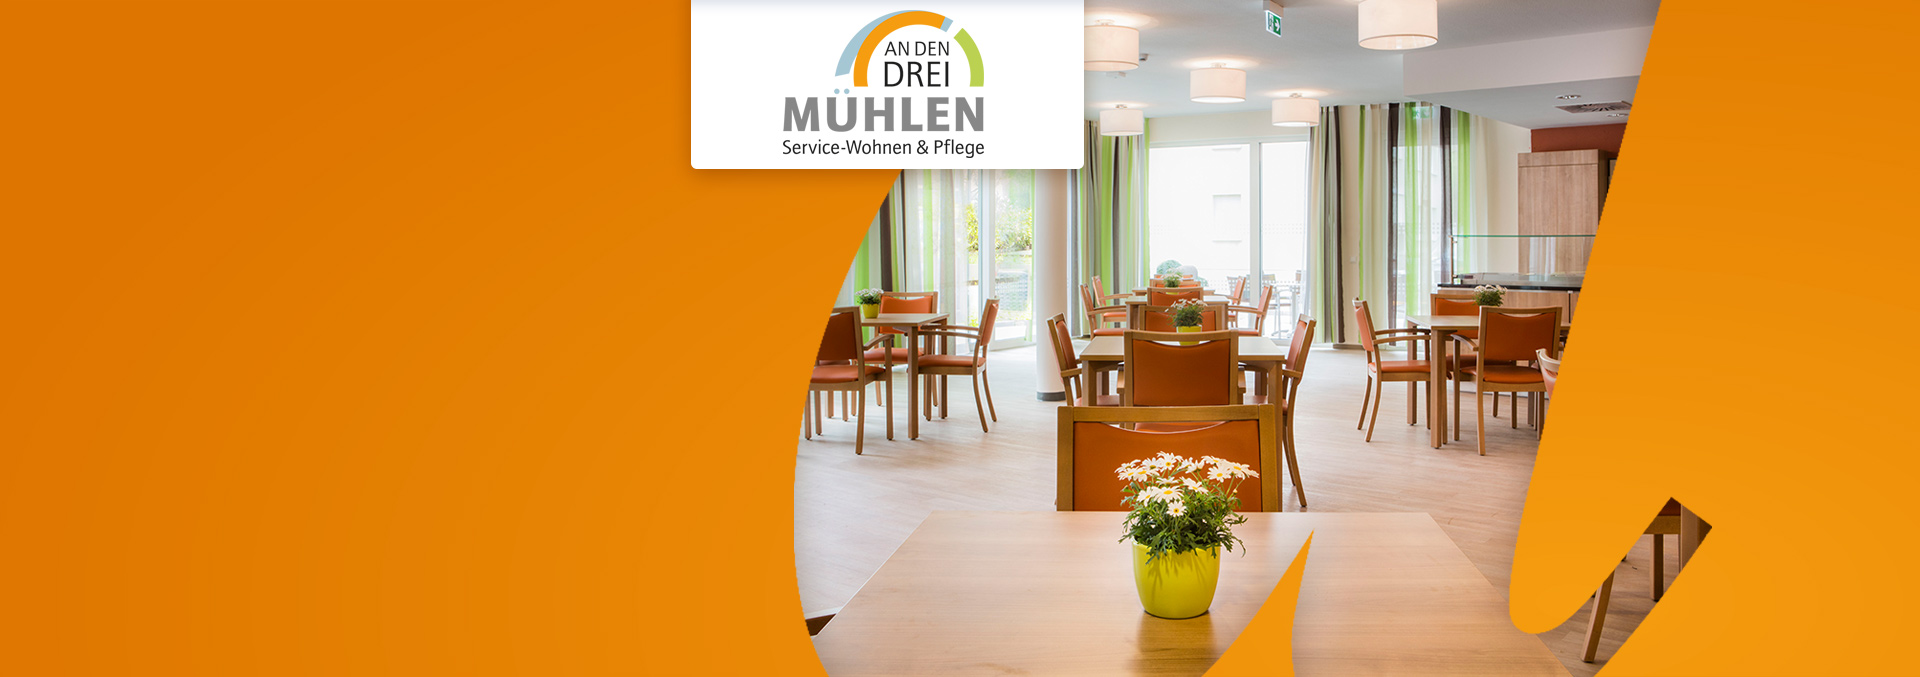 Service-Wohnen und Pflege An den drei Mühlen: Helle Cafeteria, Parkett sowie Tische und Stühle aus mittel-hellem Holz, auf den Tischen Blumenvasen.